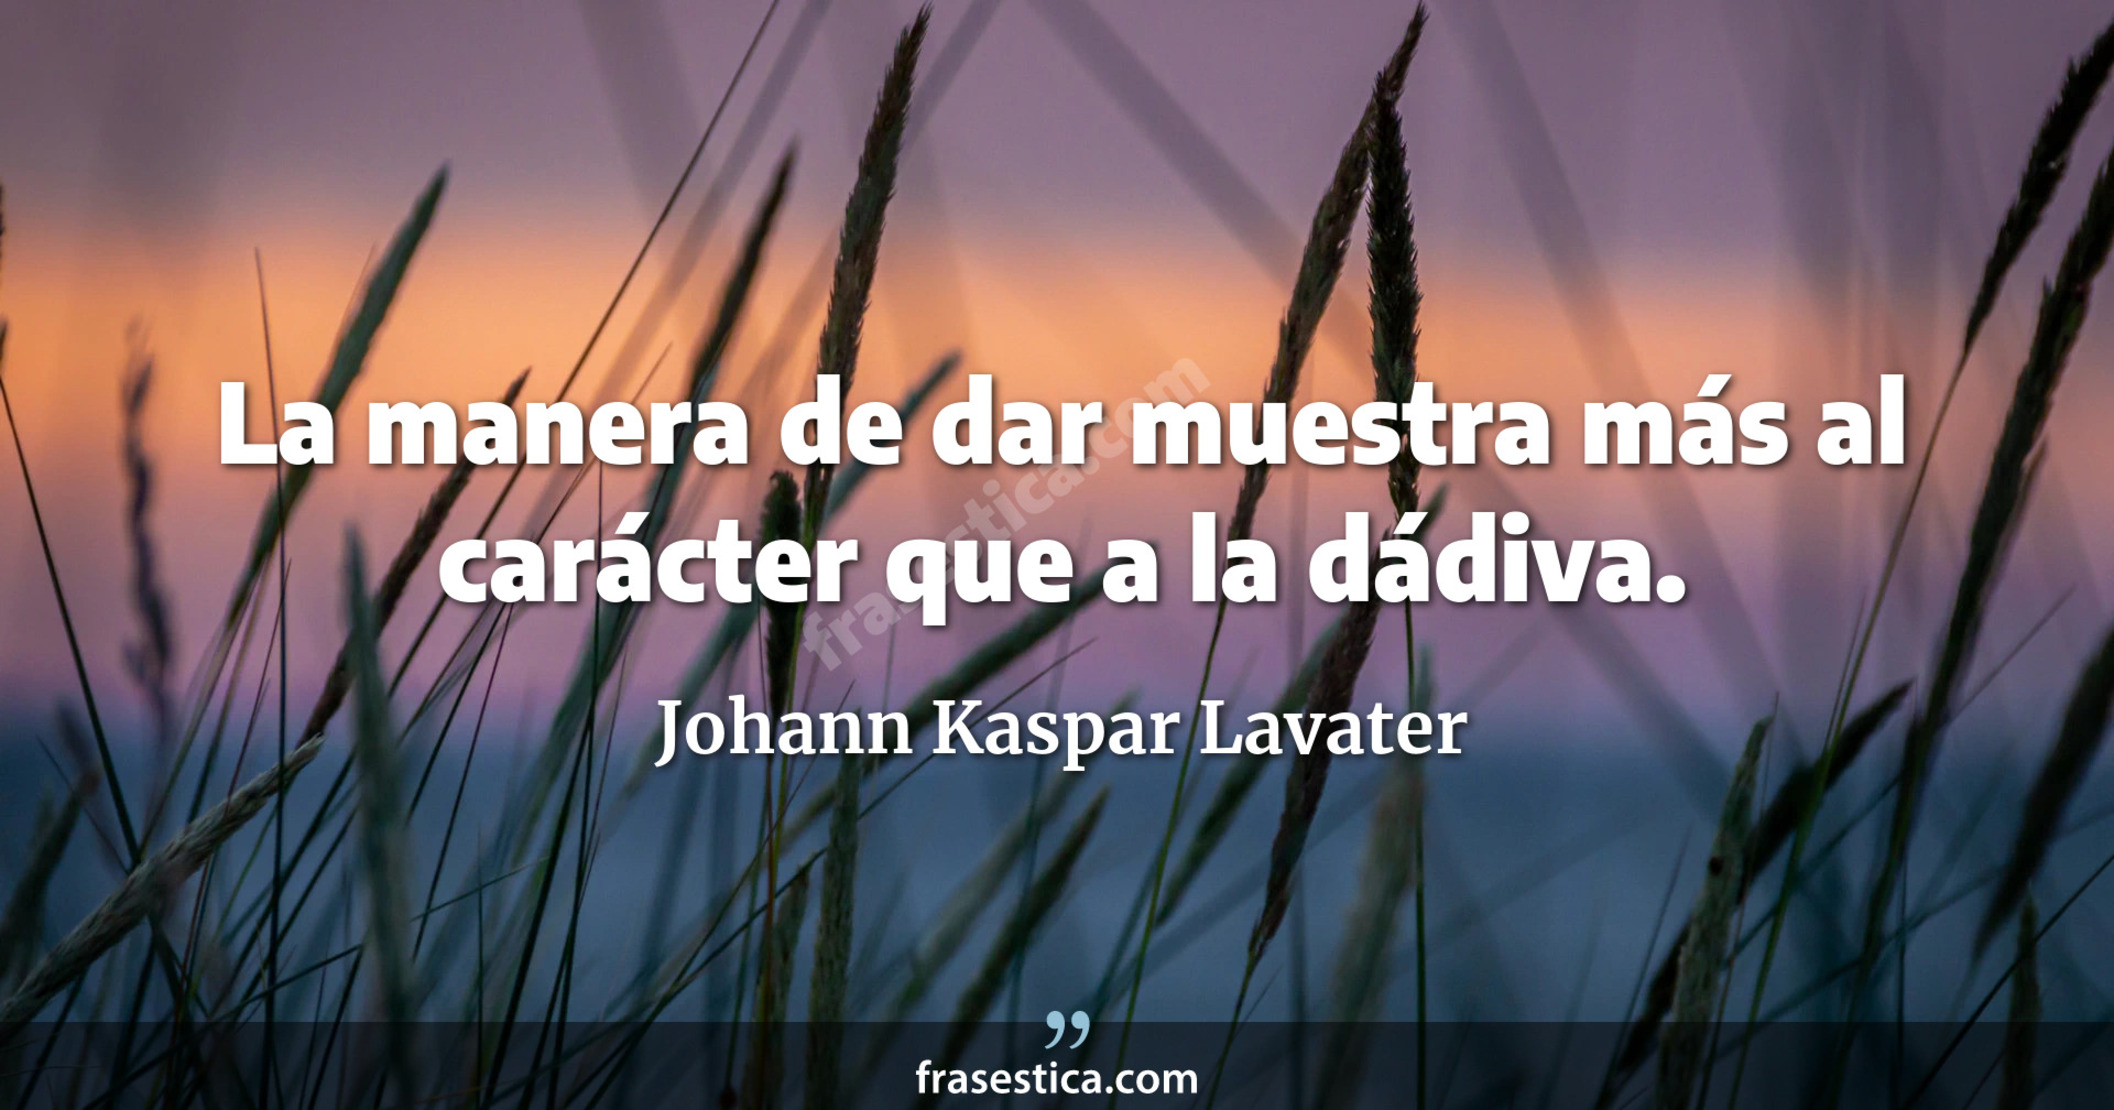 La manera de dar muestra más al carácter que a la dádiva. - Johann Kaspar Lavater